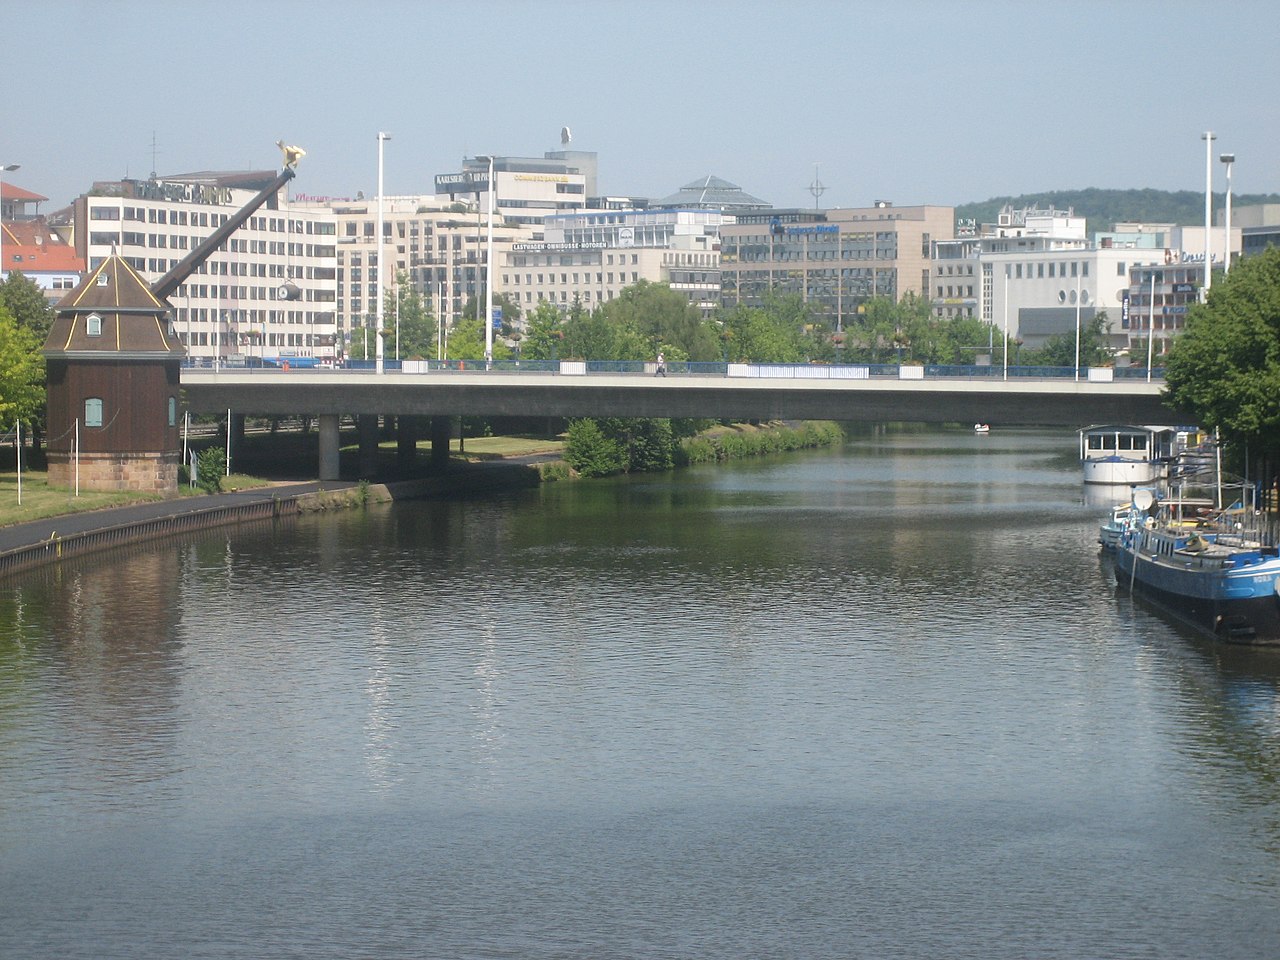 Wilhelm-Heinrich-Brücke in Saarbrücken